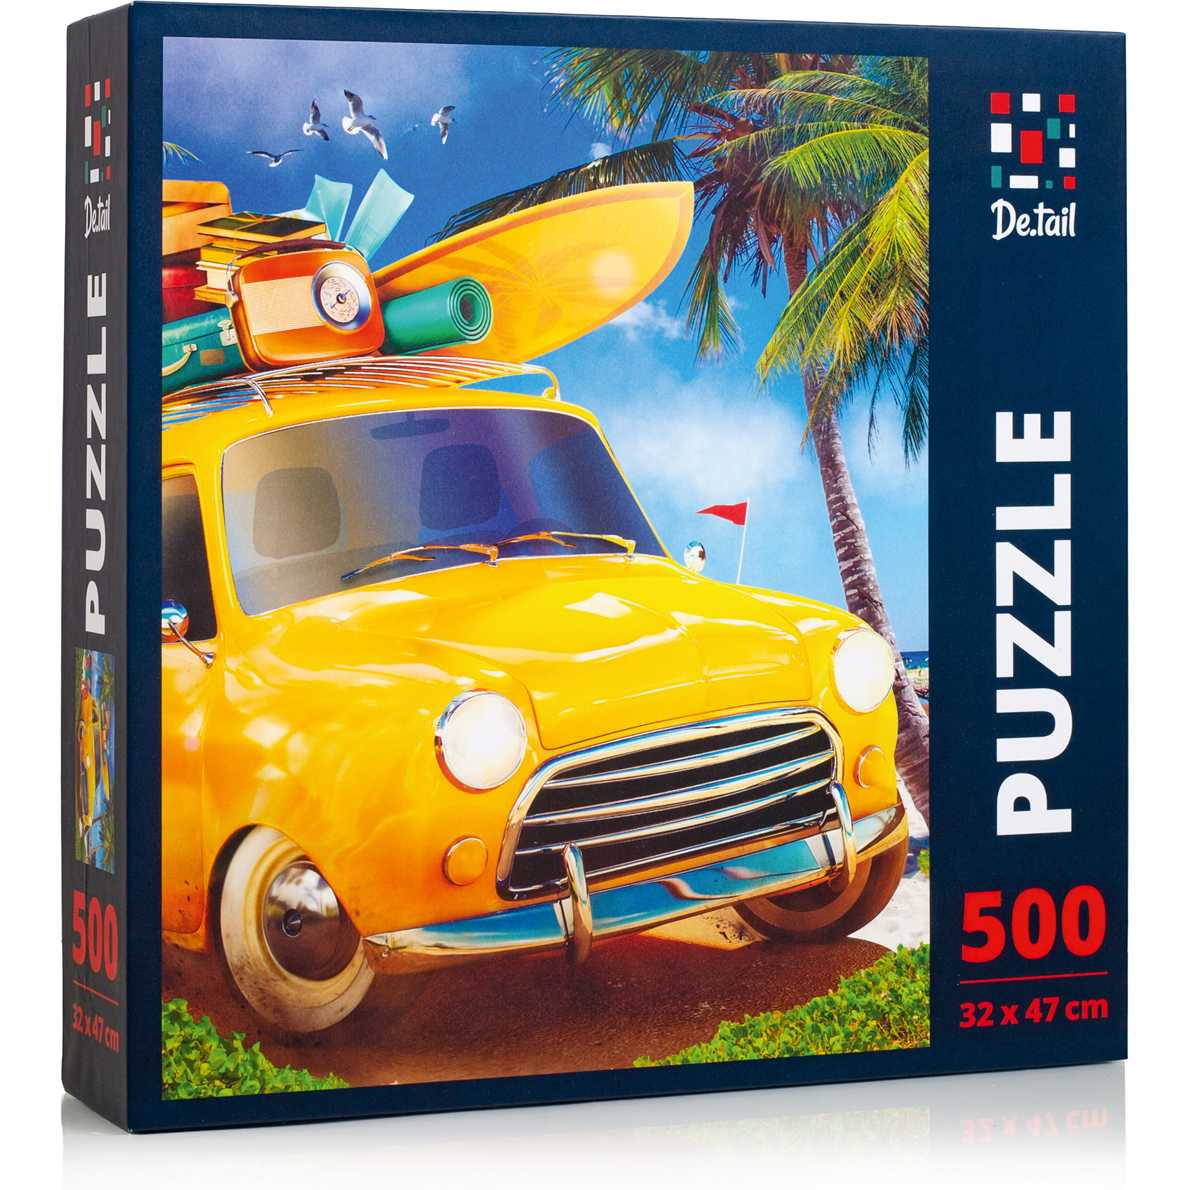 Puzzle Bright summer, 32x47 cm, 500 piese De.tail DT500-02